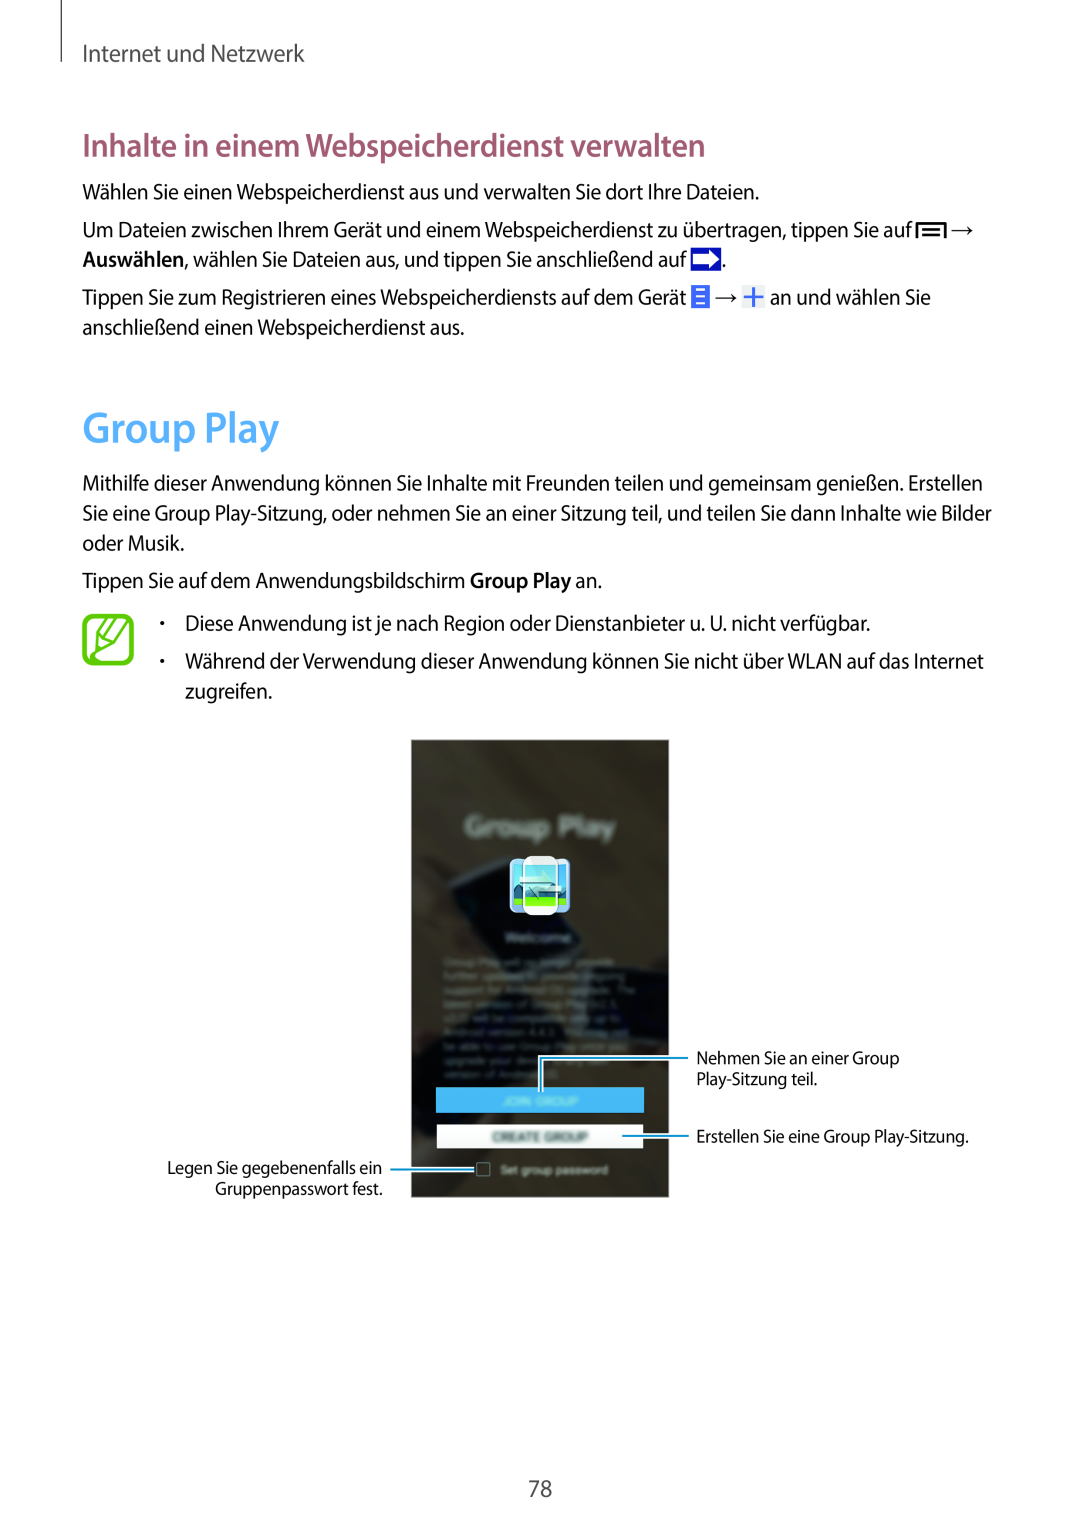 Samsung SM-N9005ZKEPRT, SM-N9005ZKEXEO Group Play, Inhalte in einem Webspeicherdienst verwalten, Internet und Netzwerk 